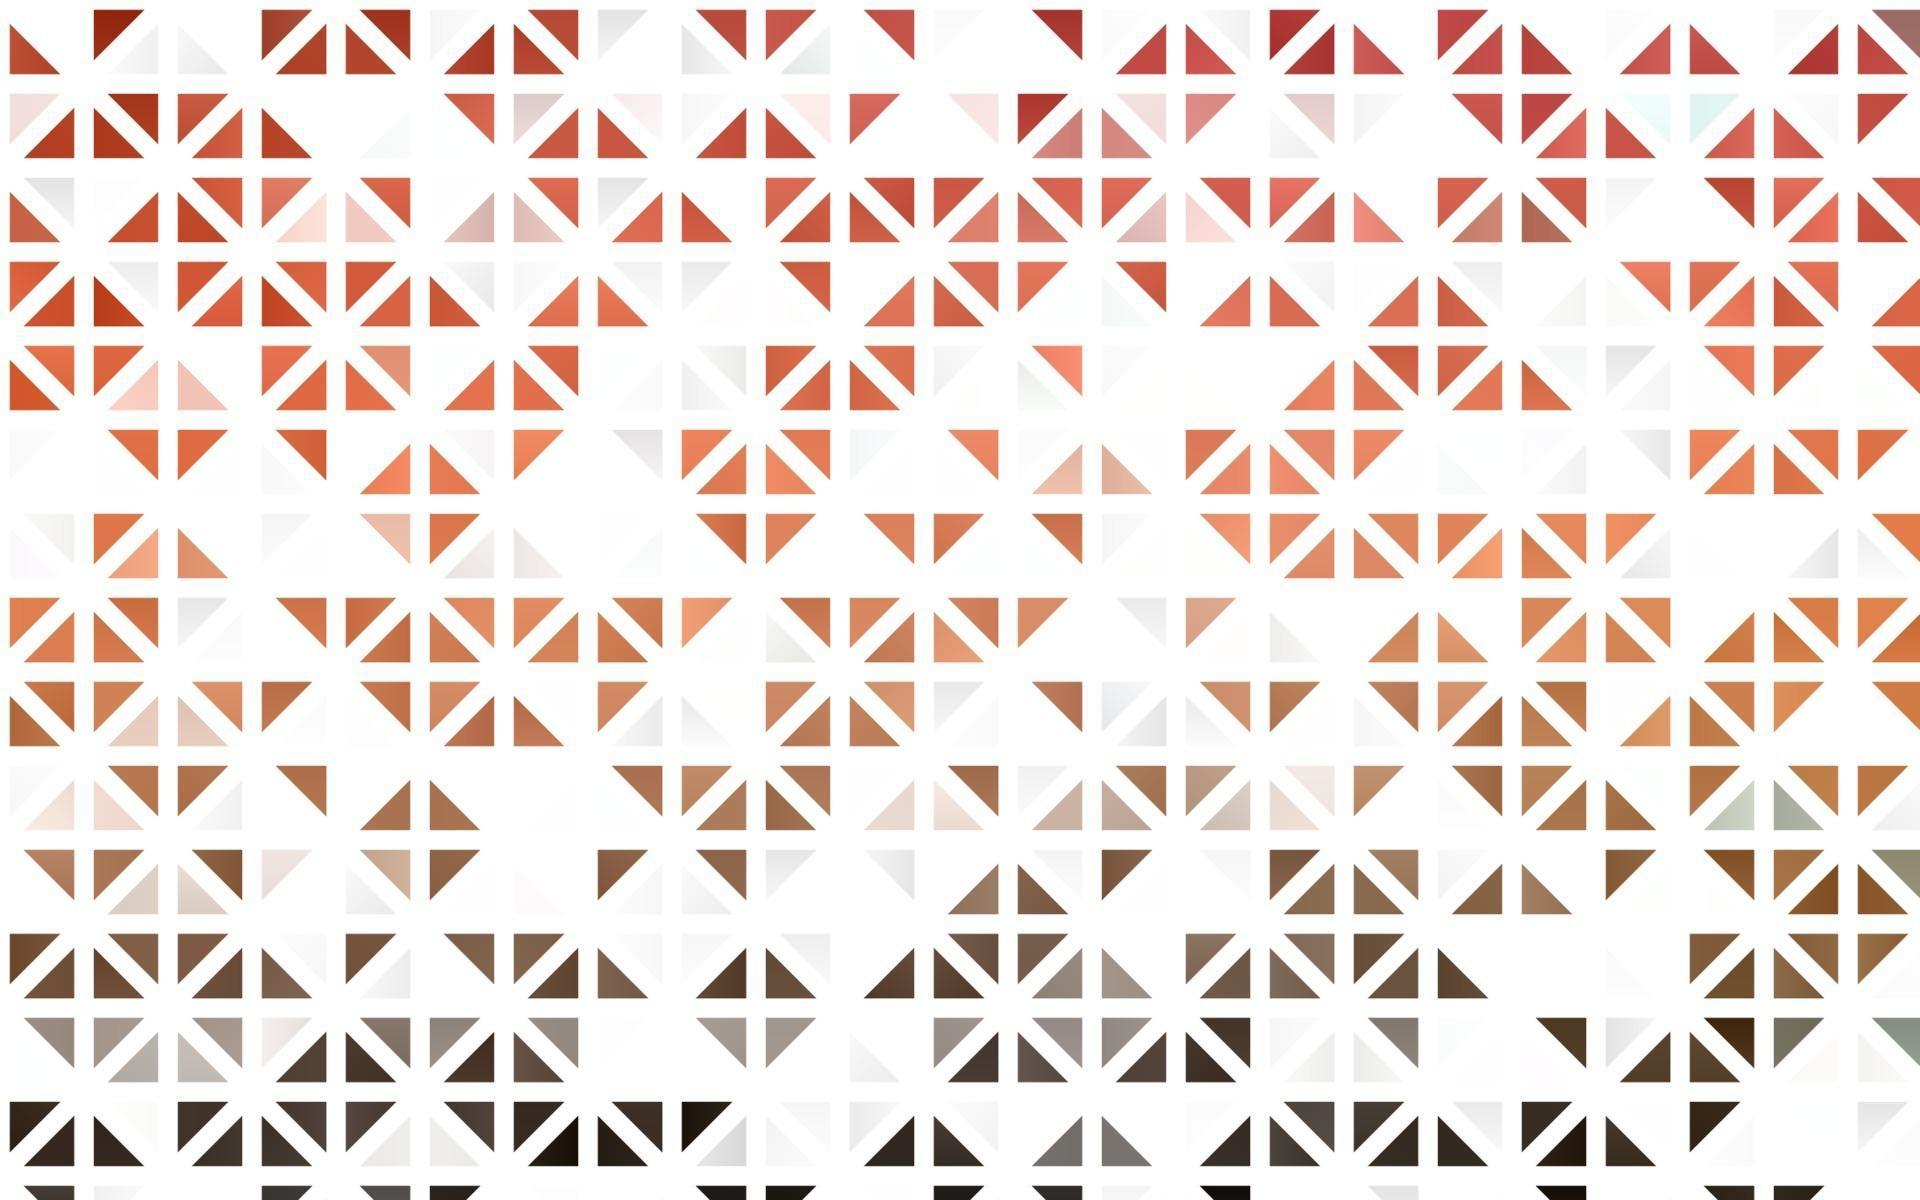 textura sem emenda de luz vermelha vector em estilo triangular.